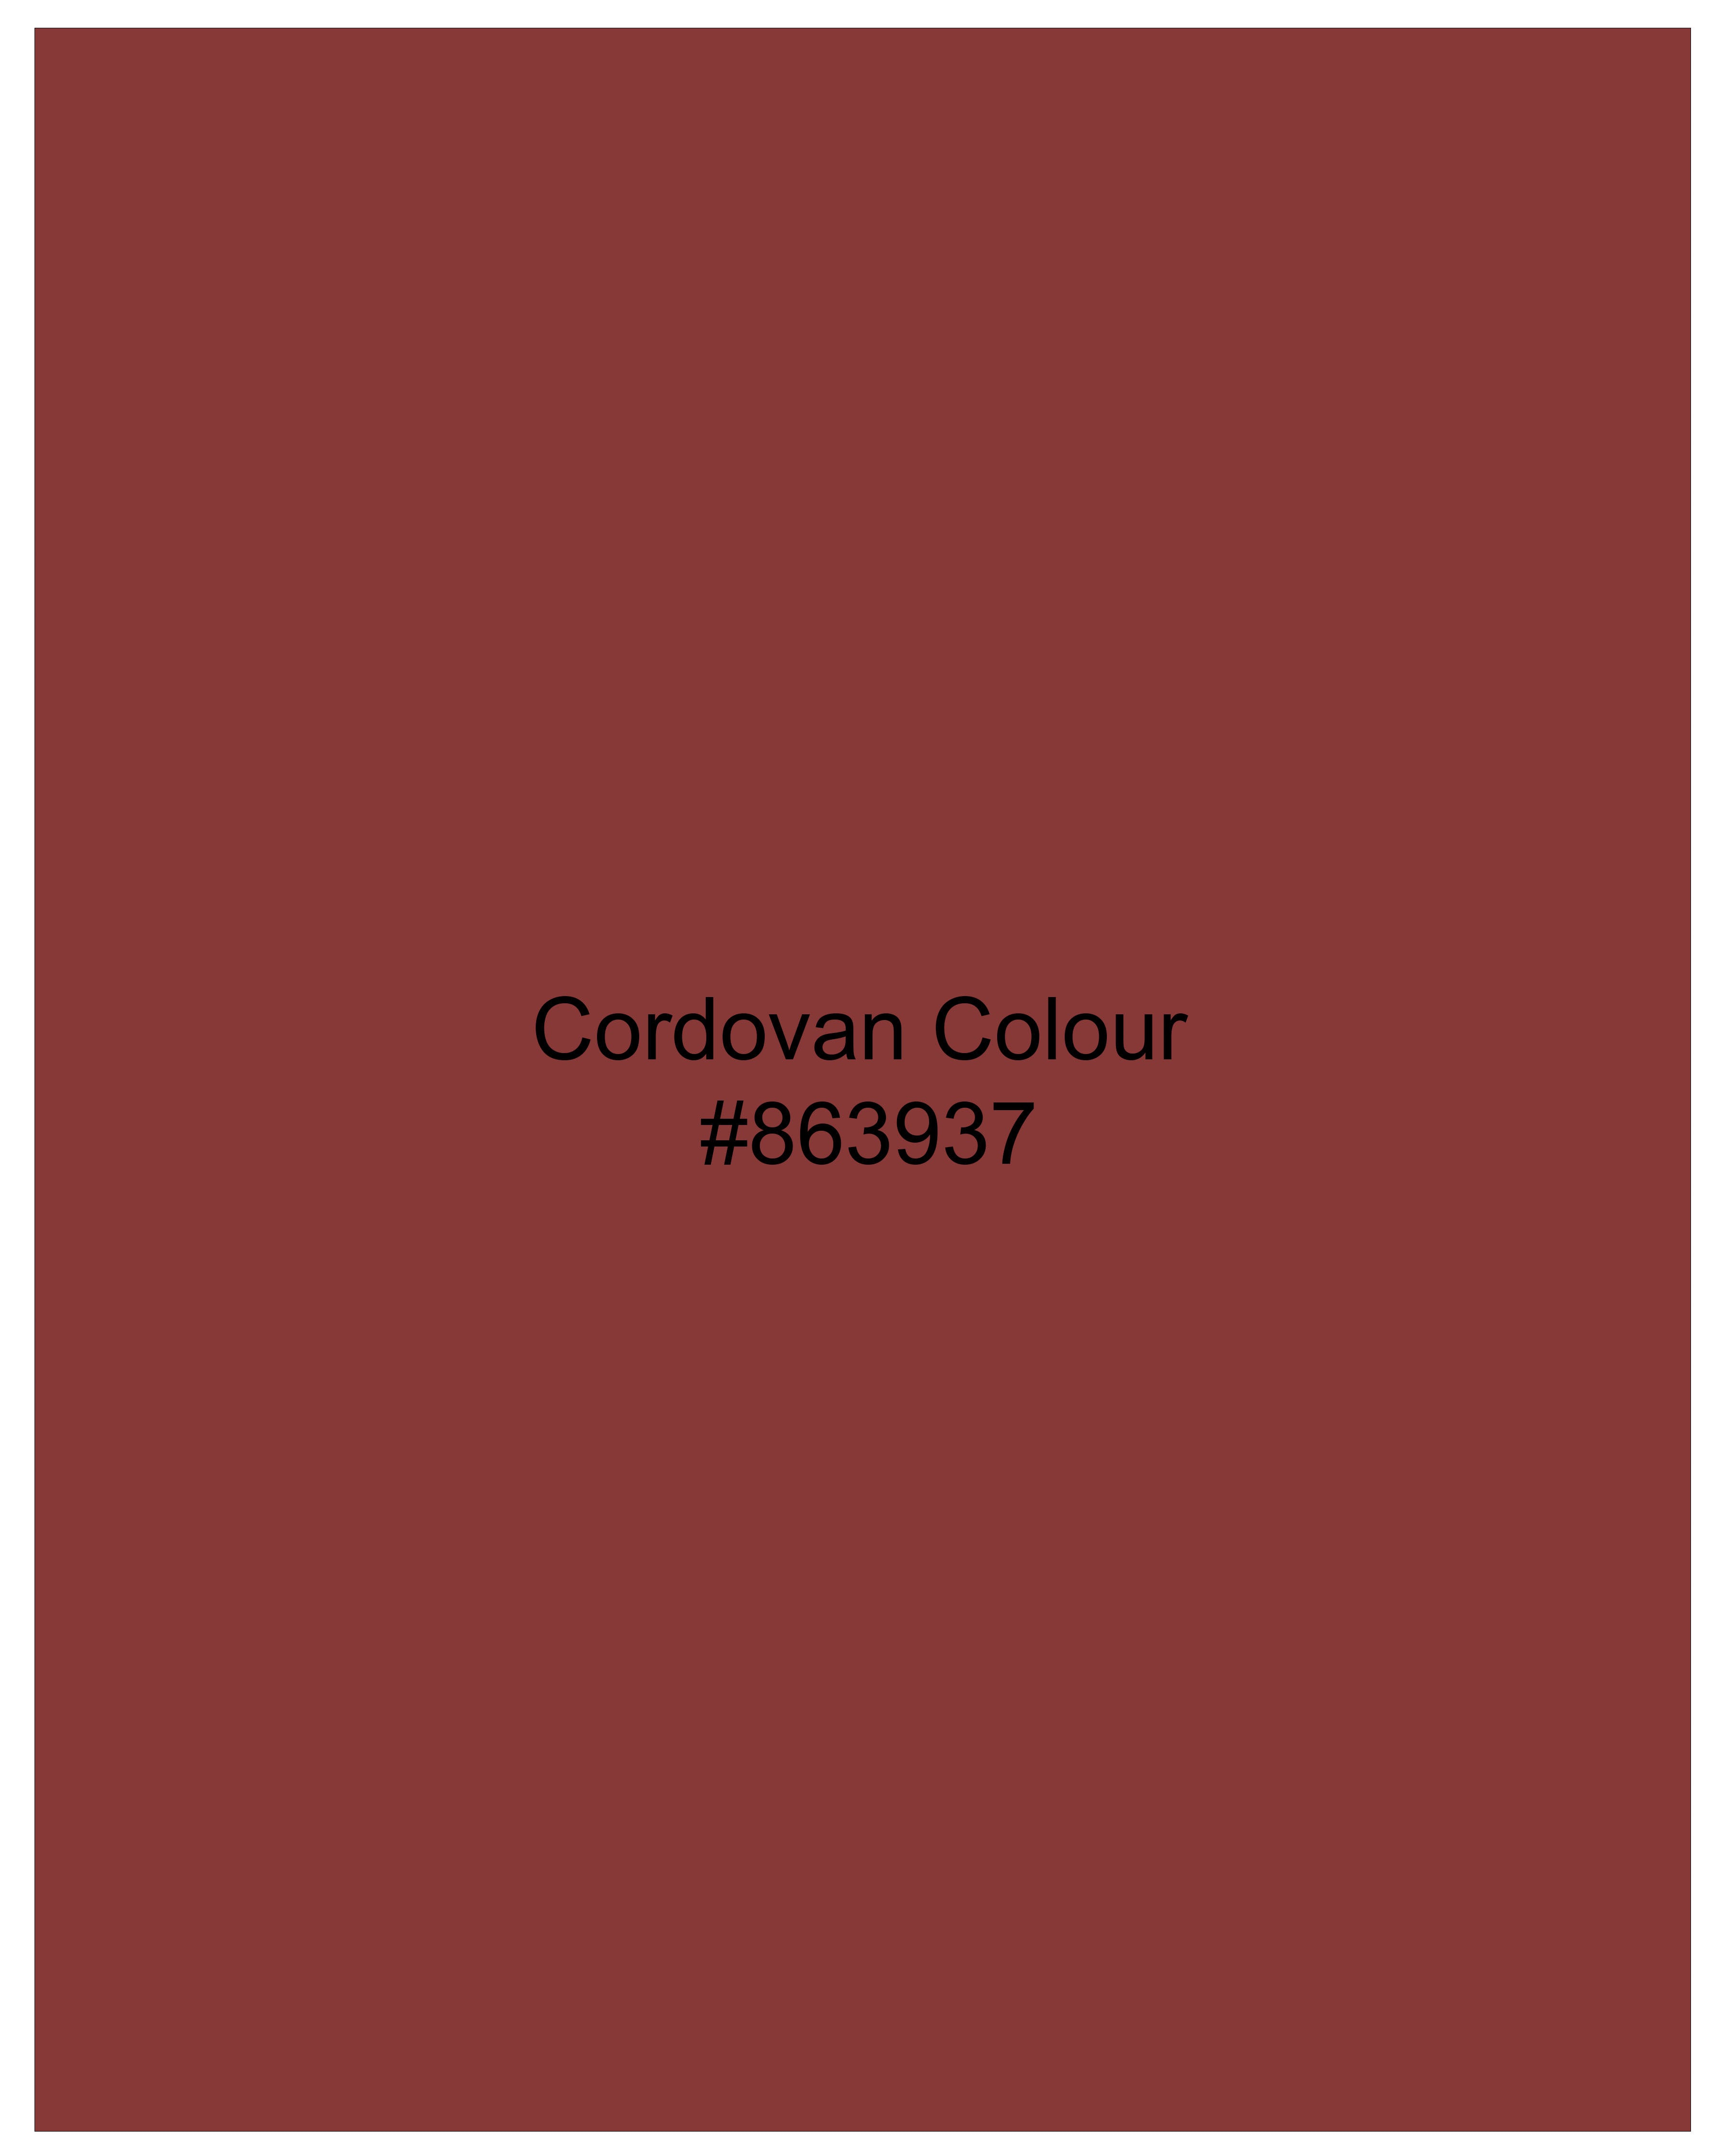 Cordovan Red Wool Rich Pant T2533-28, T2533-30, T2533-32, T2533-34, T2533-36, T2533-38, T2533-40, T2533-42, T2533-44